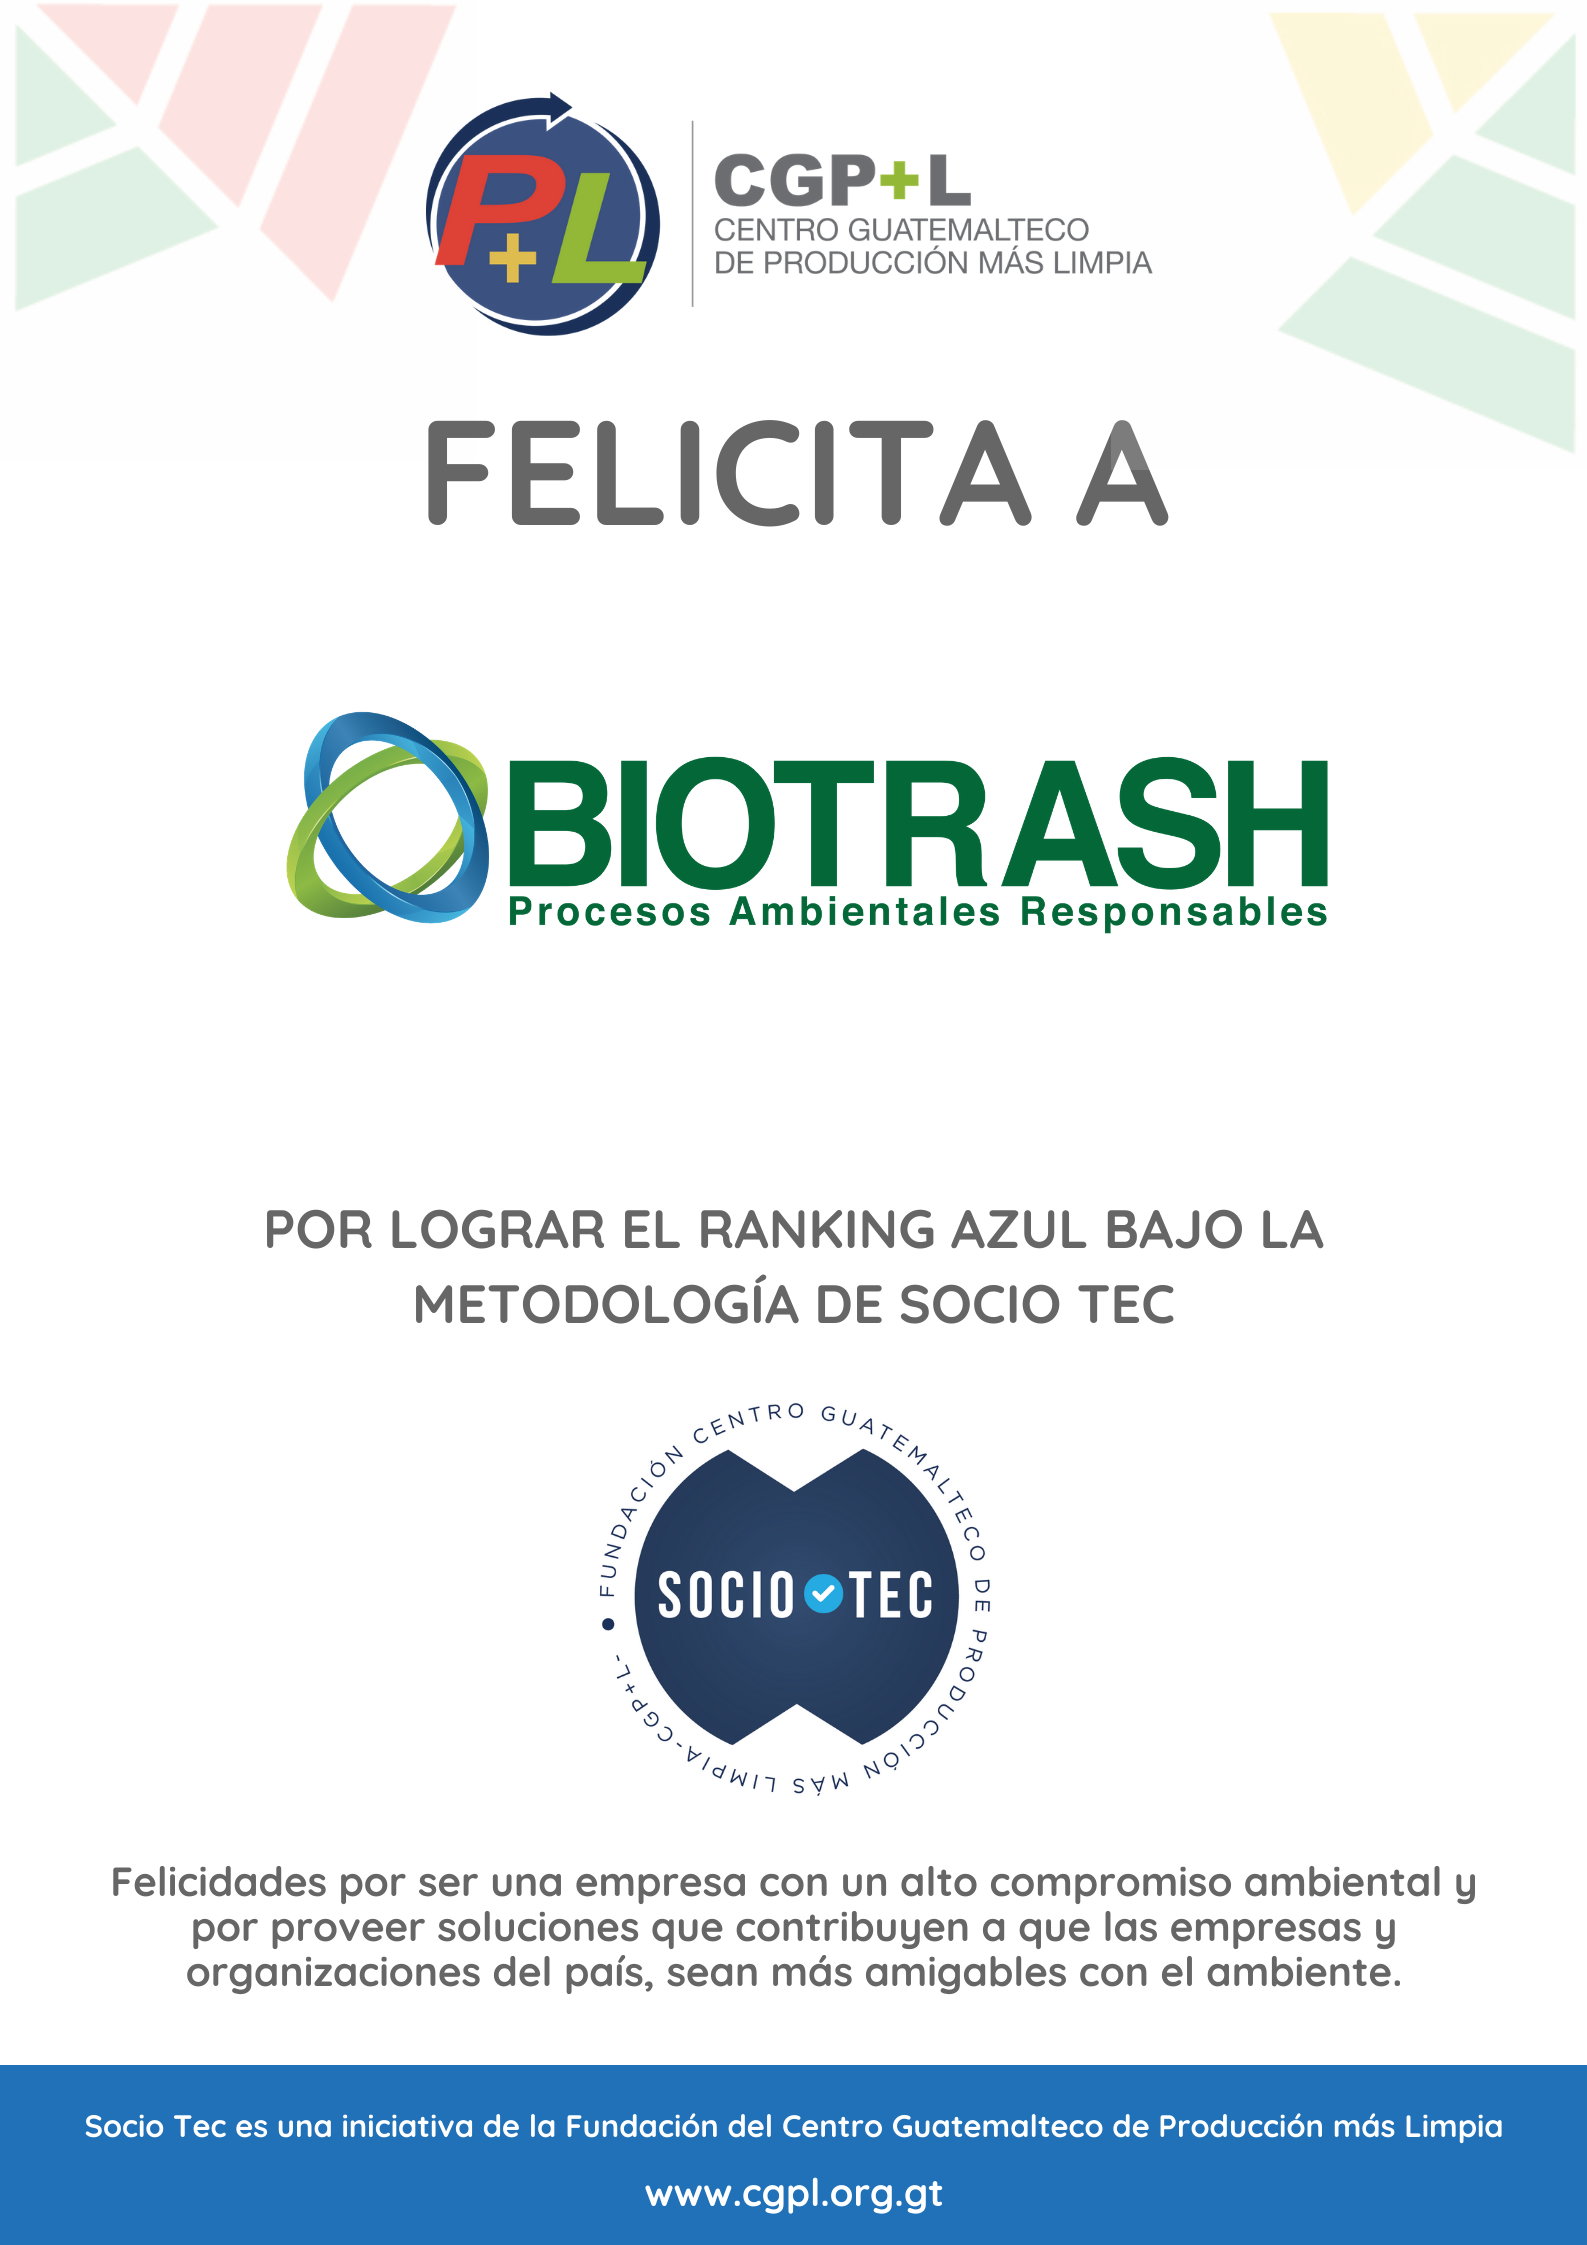 Felicidades A Biotrash Por Lograr El Ranking Técnico Azul En La Metodología Socio Tec